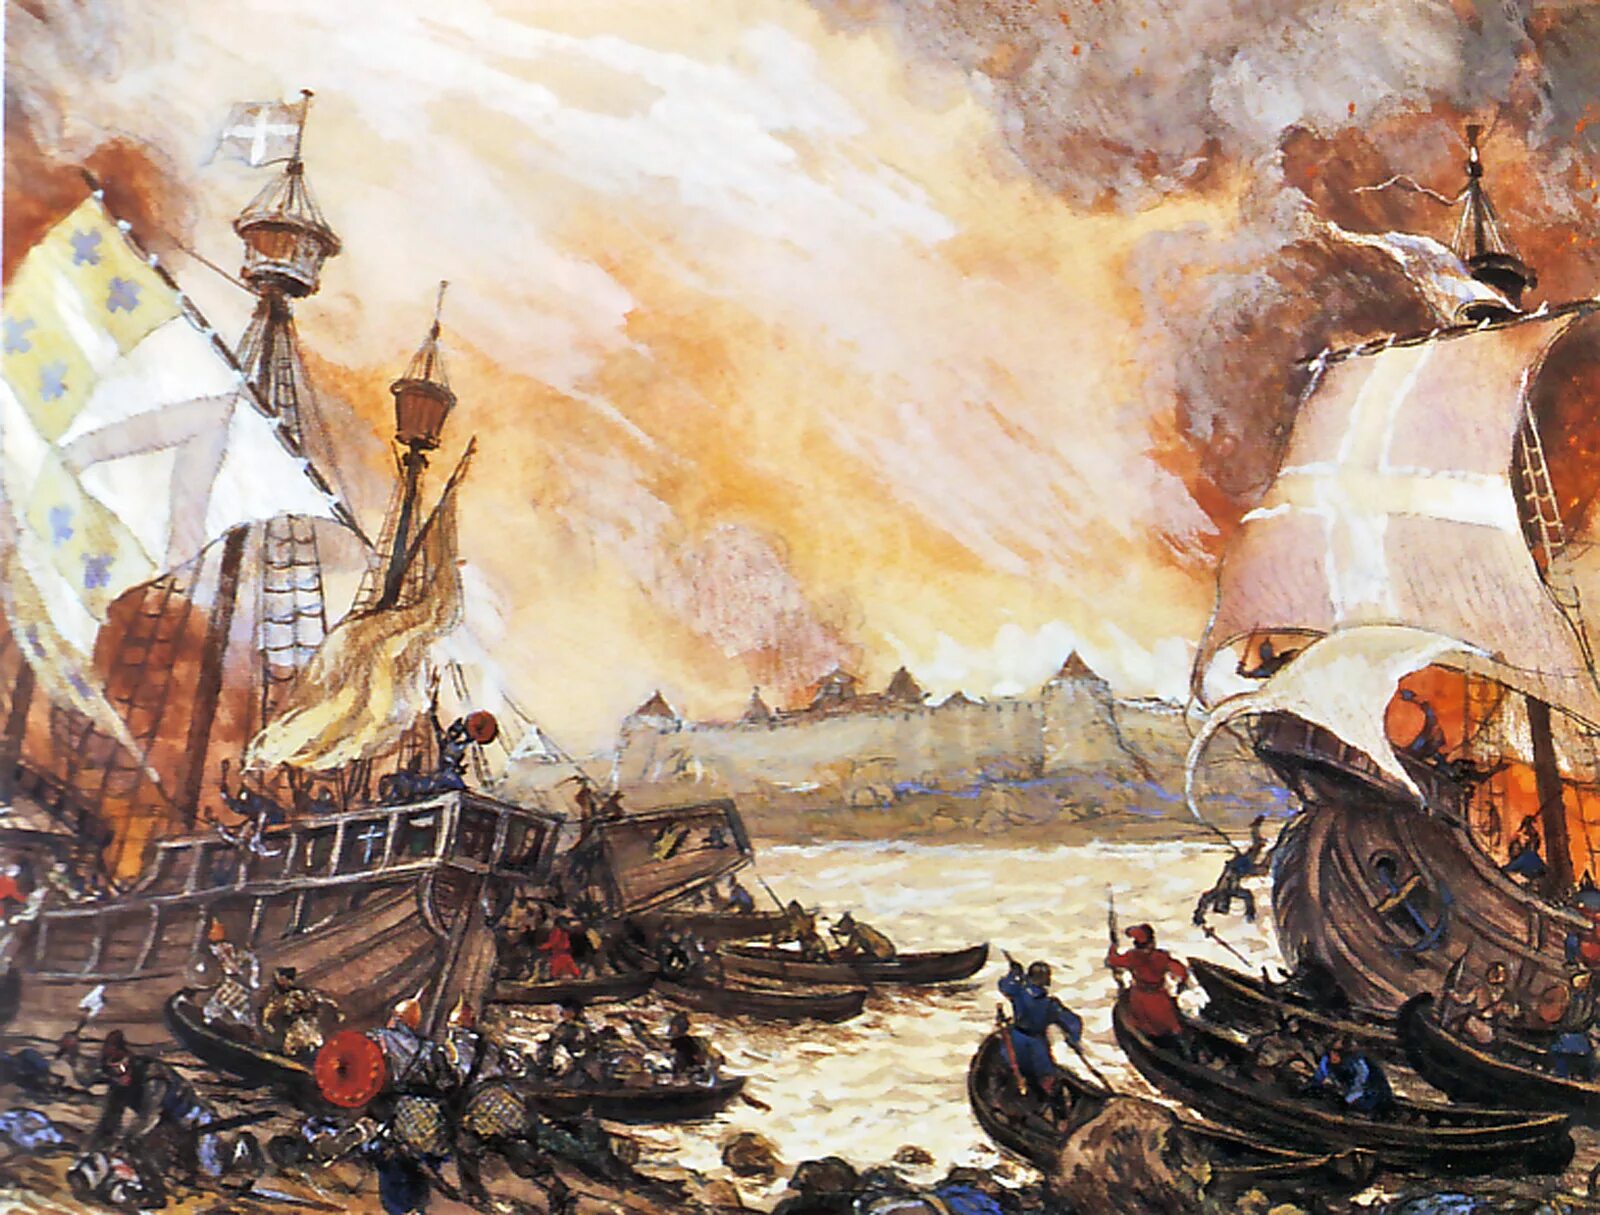 Сражение новгородцев со шведами у крепости Ладога в 1164 году. Невская битва корабли Шведов. Захват швеции